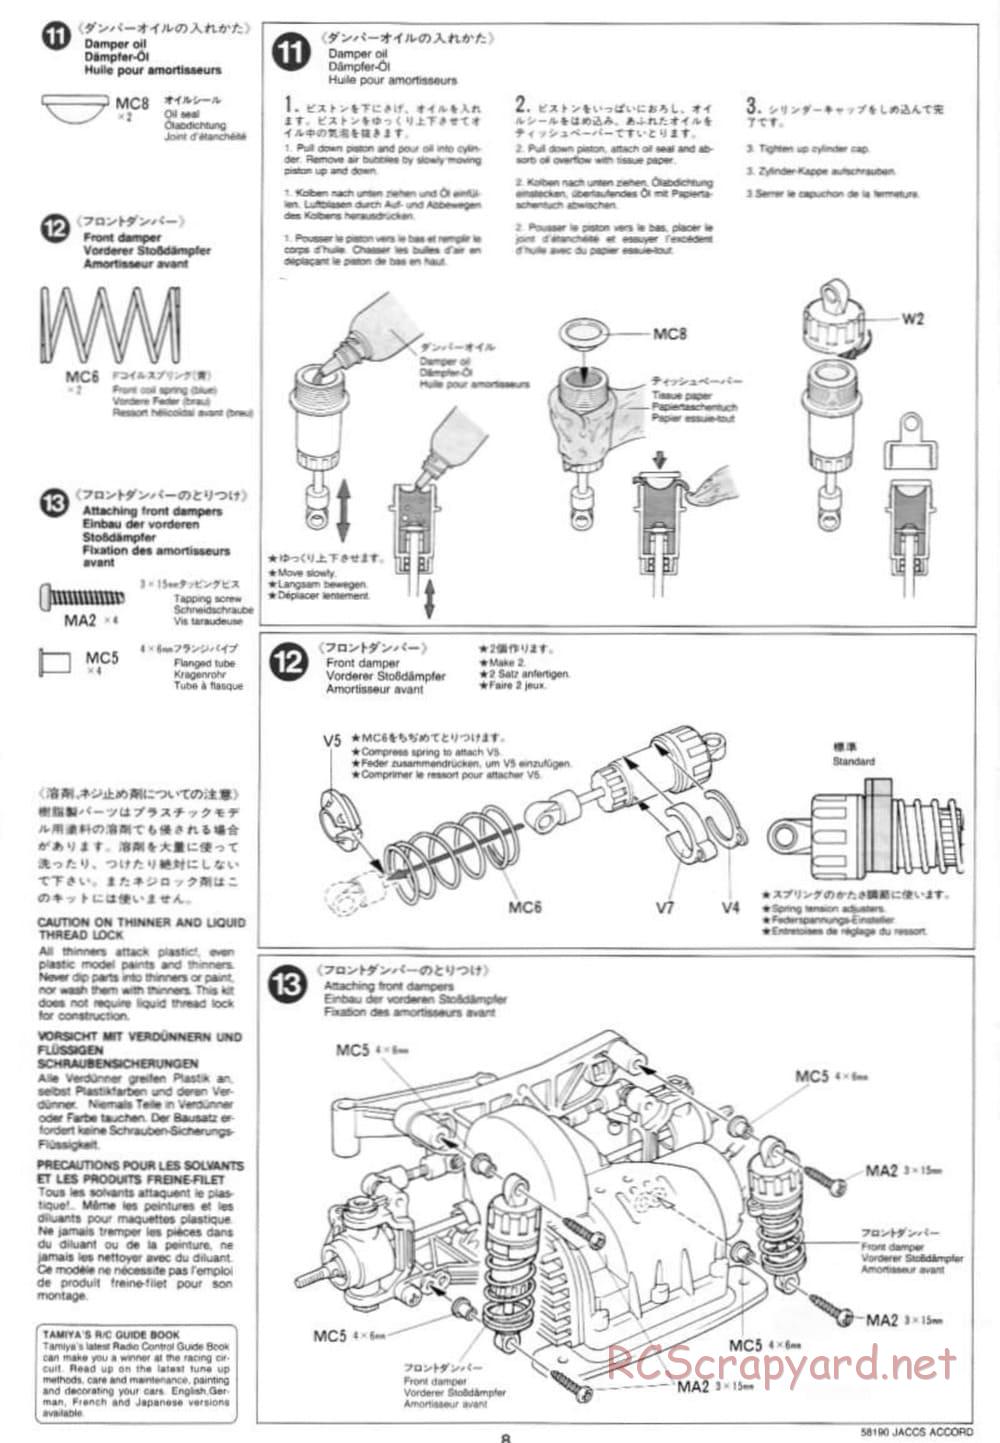 Tamiya - JACCS Honda Accord - FF-01 Chassis - Manual - Page 8